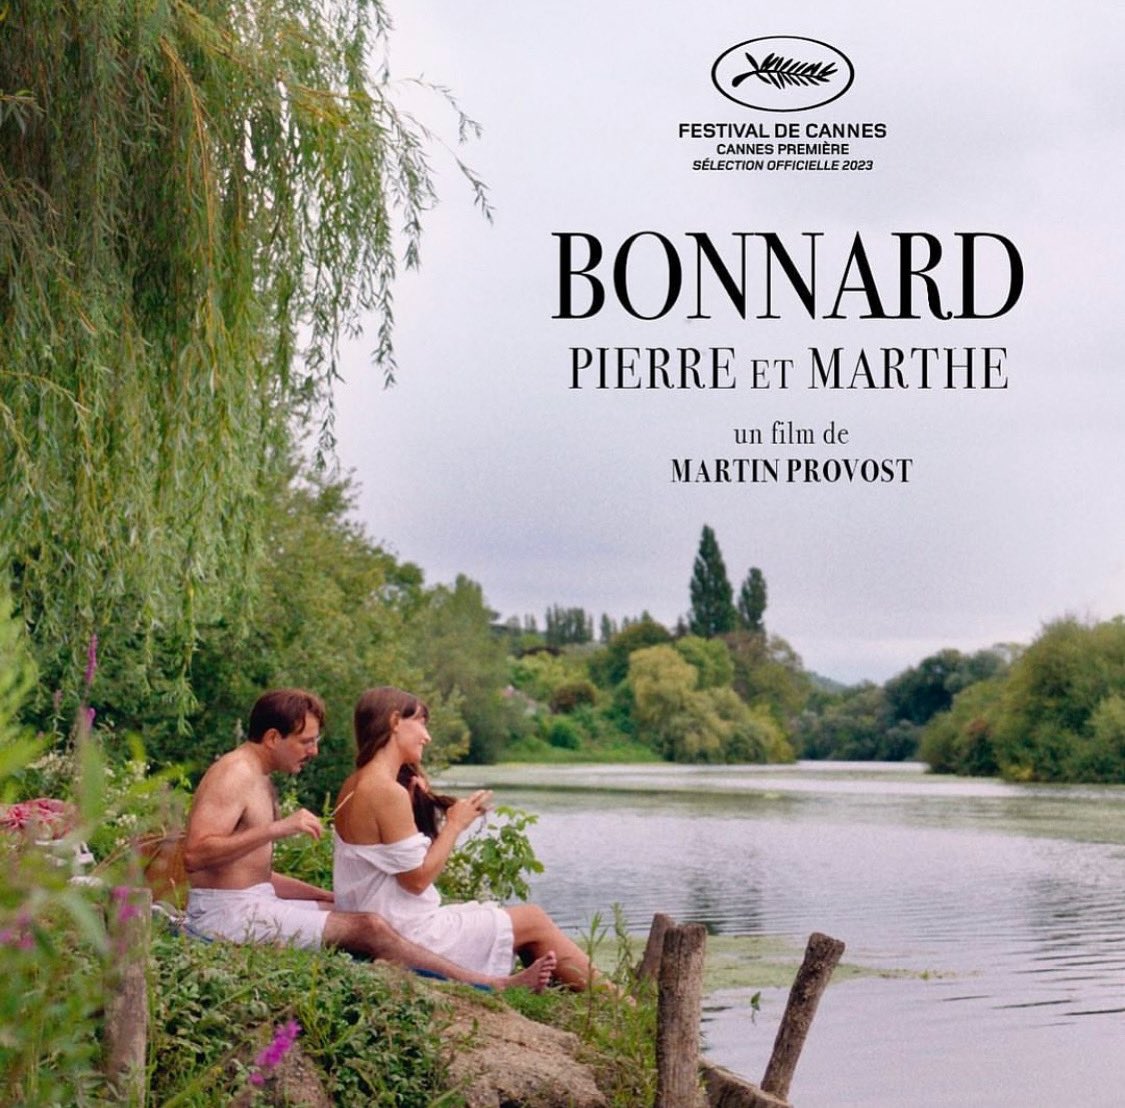 Bonnard, Pierre et Marthe (122’) - Film français de Martin Provost